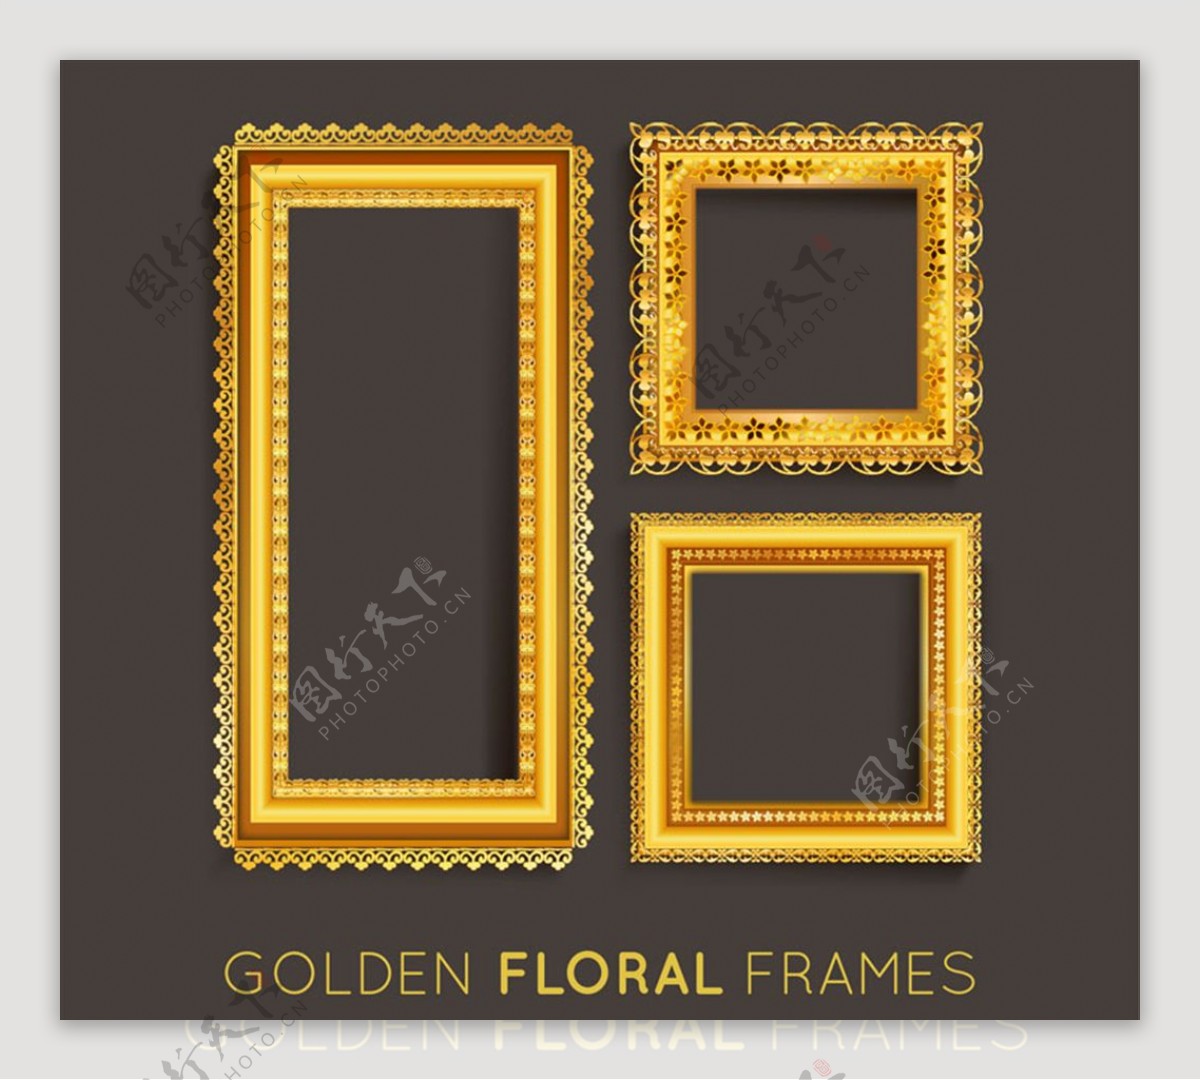 3款金色相框设计矢量素材